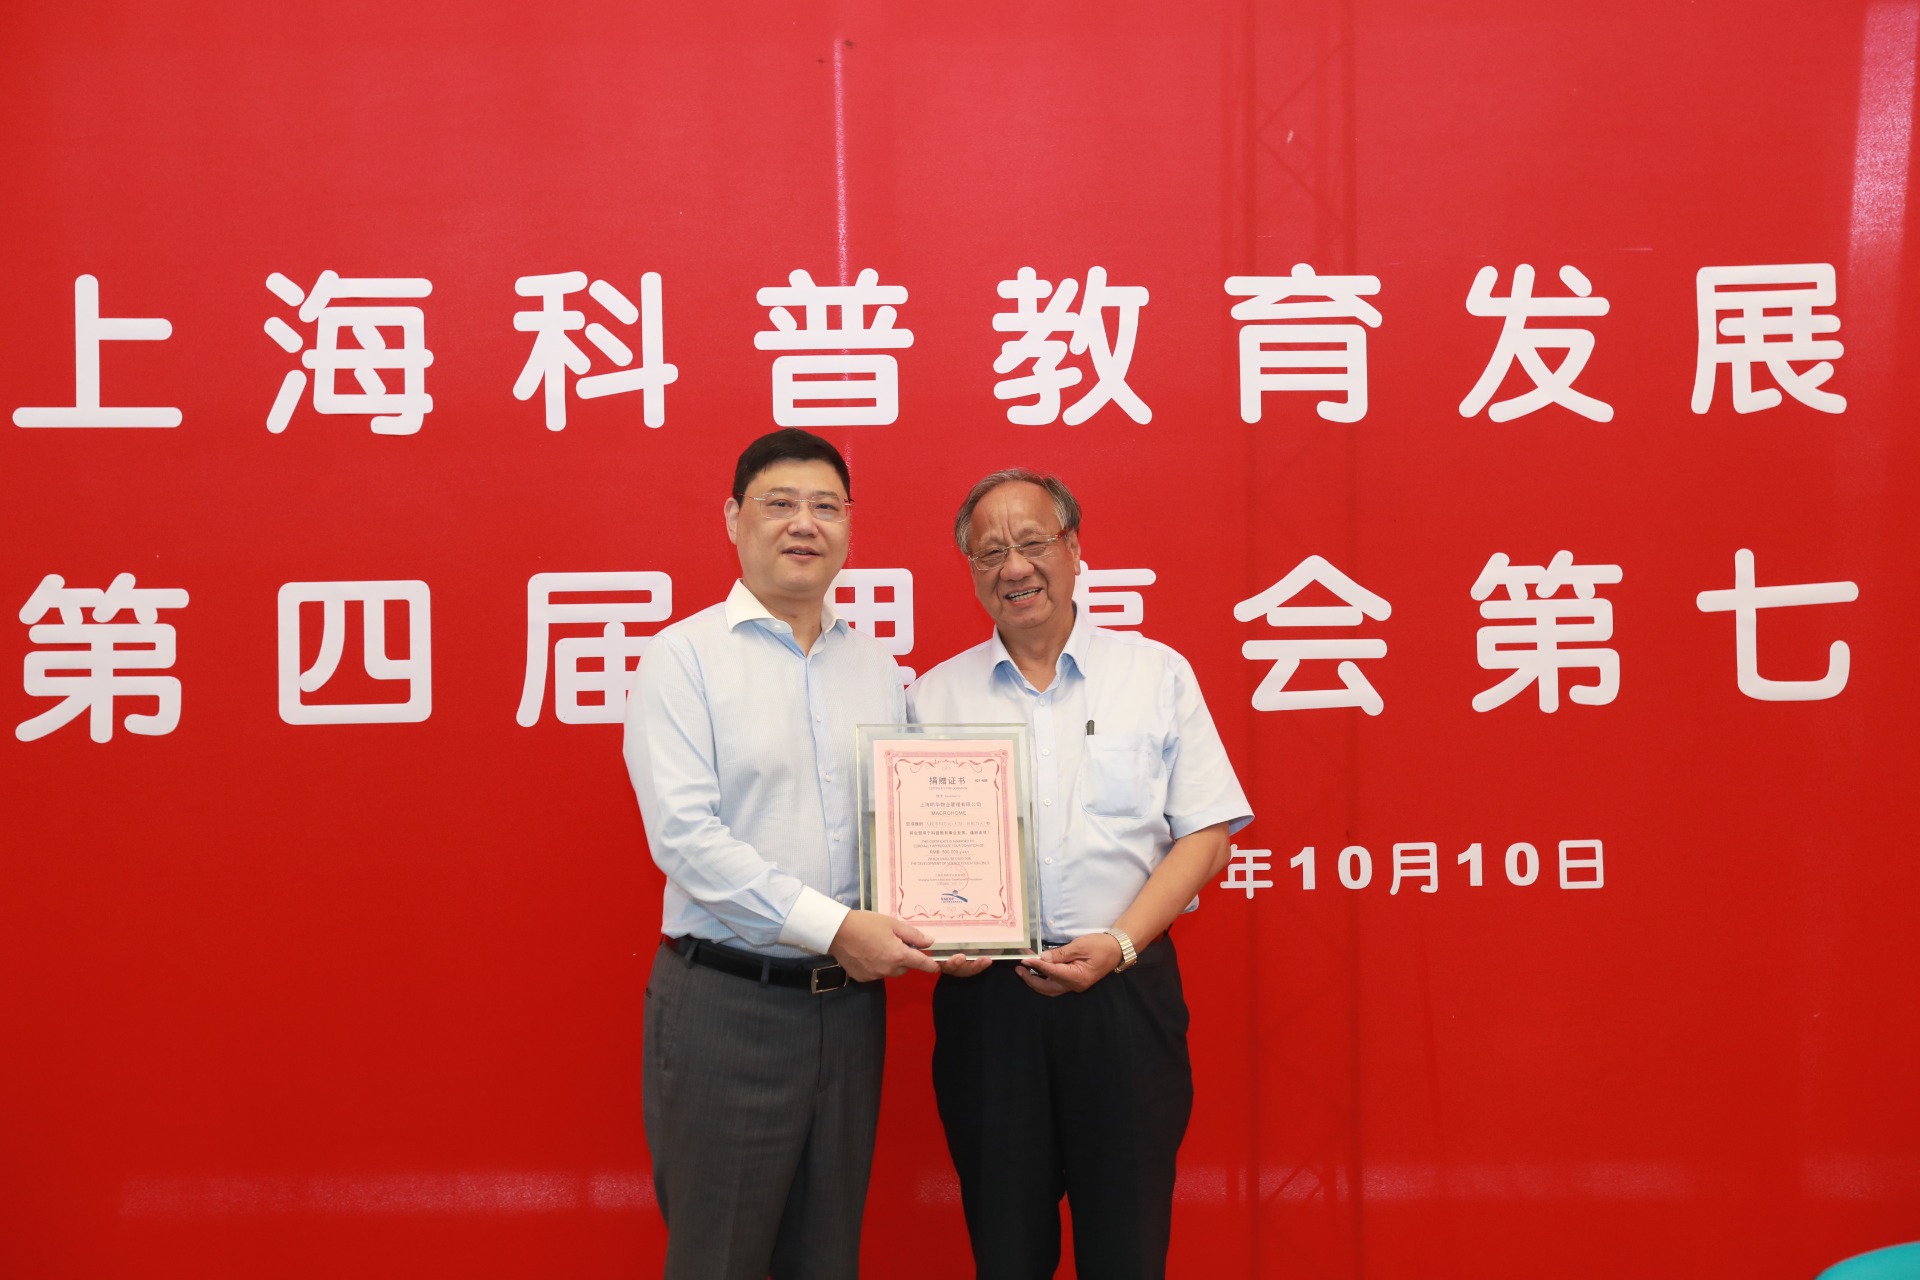 上海明华物业第10次向上海科普教育发展基金会捐赠